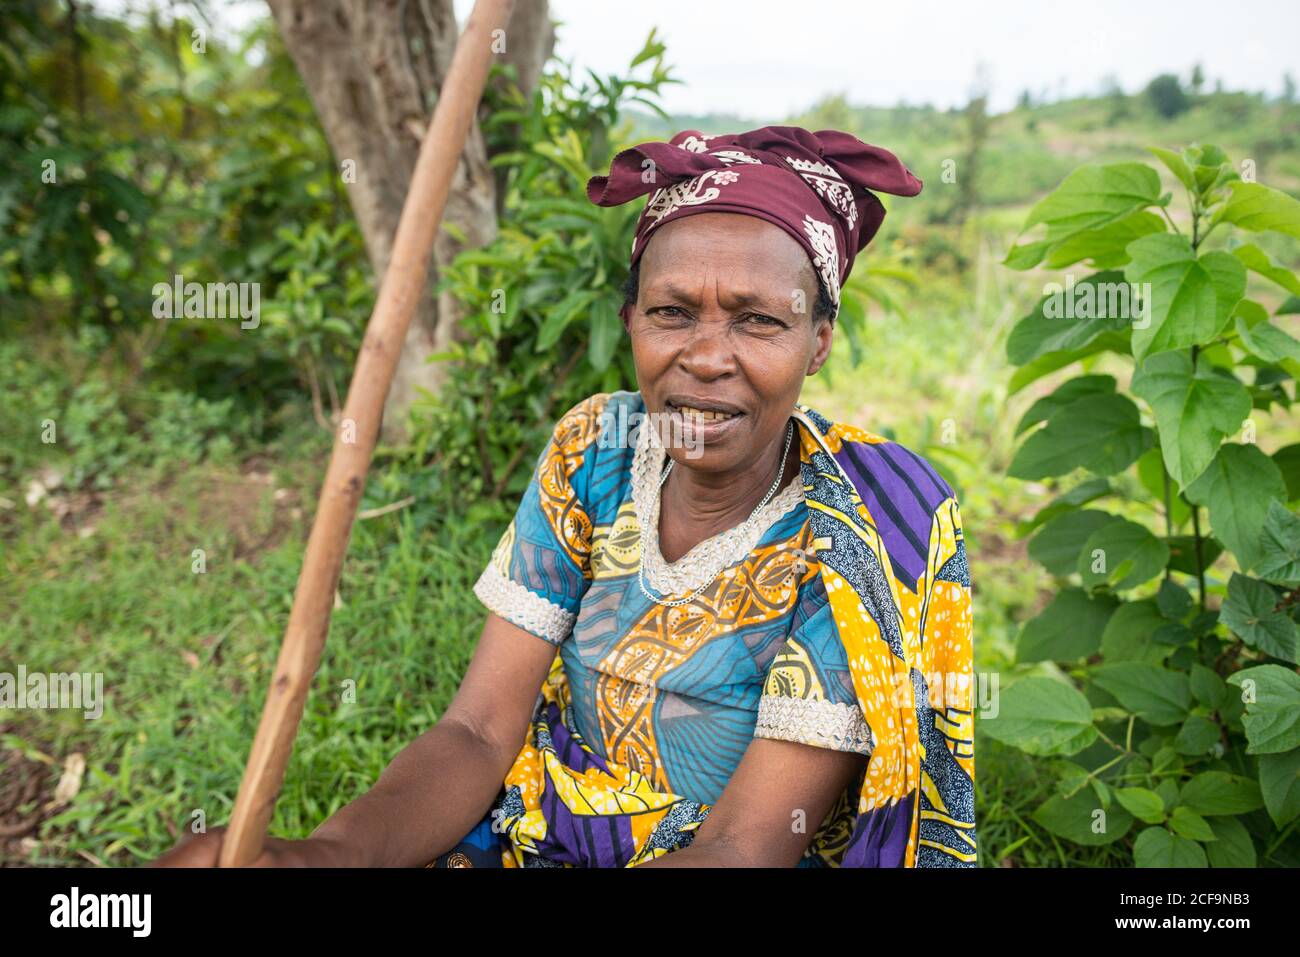 Ruanda, Afrique - 14 décembre 2019: Afro-américain frognant vieille dame en robe colorée assis dans la nature regardant la caméra Banque D'Images